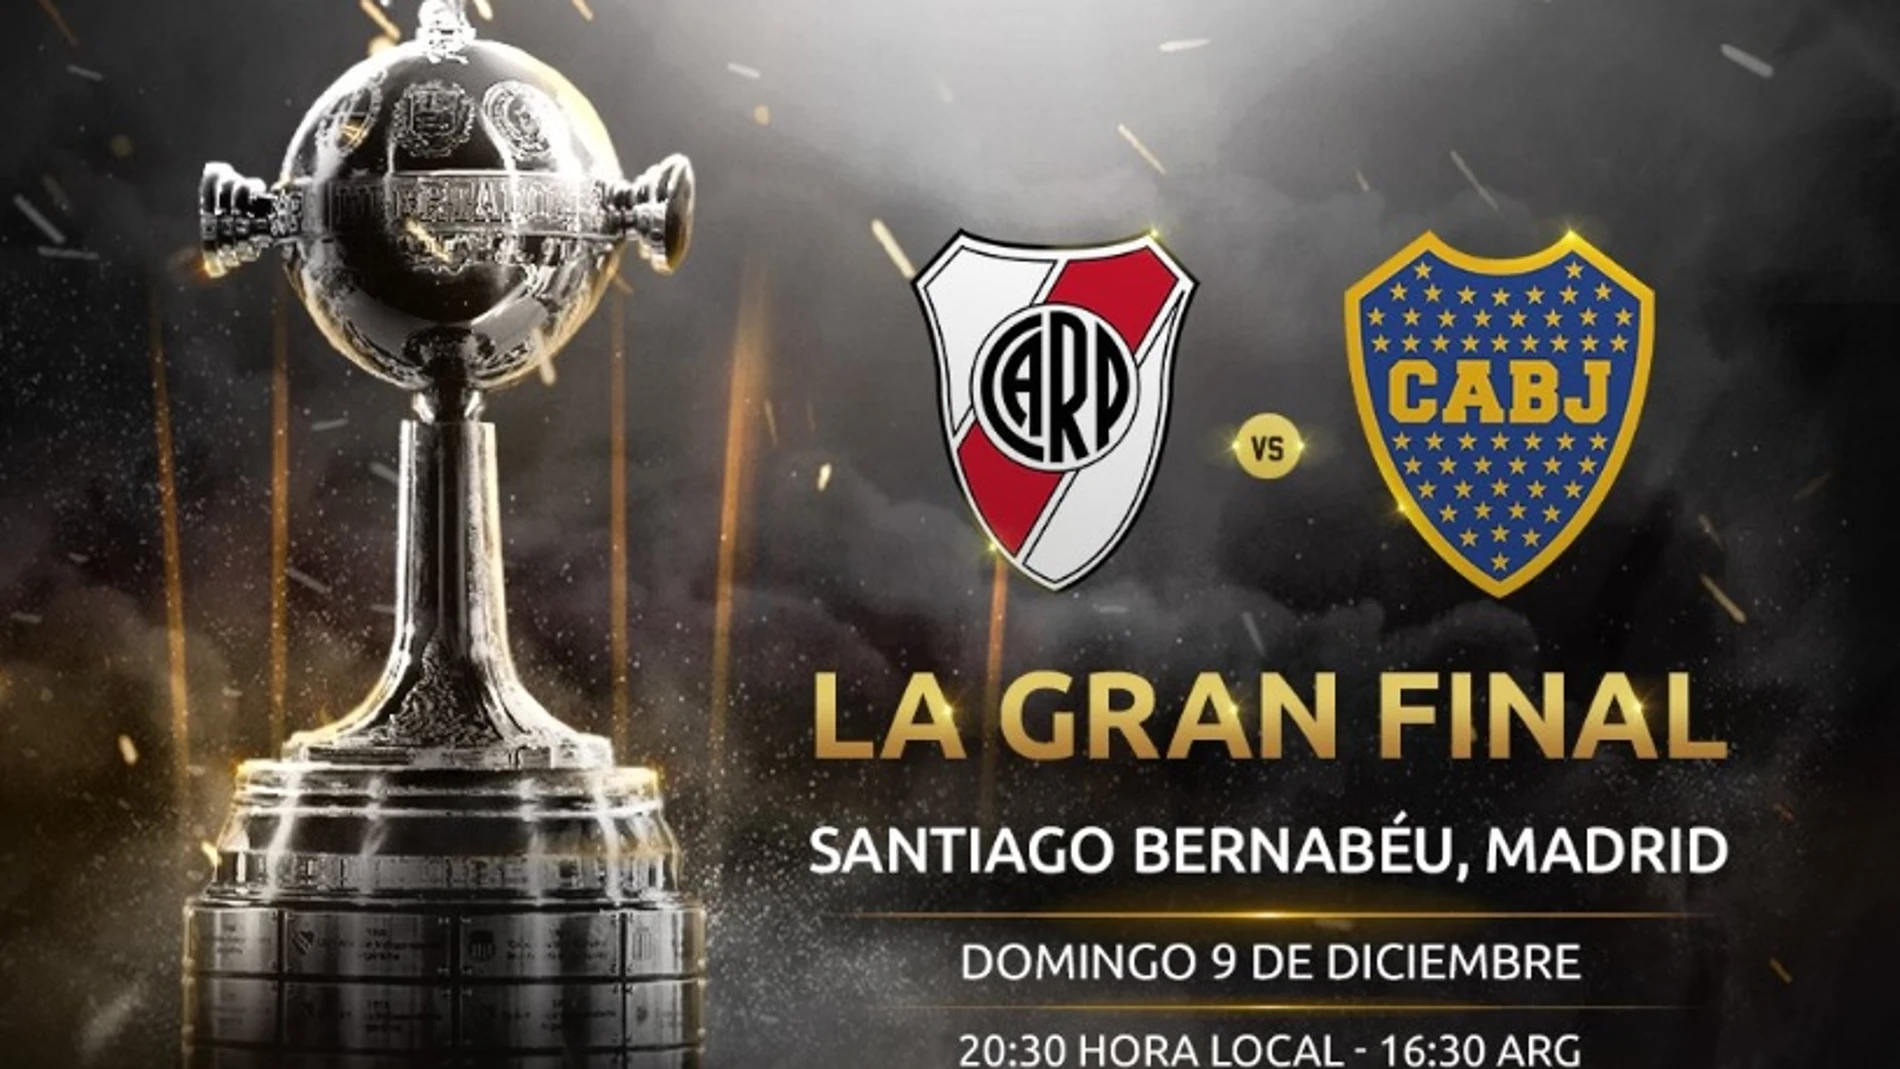 OFICIAL: El River Plate - Boca Juniors de la final de la Copa en el Santiago 9 de diciembre